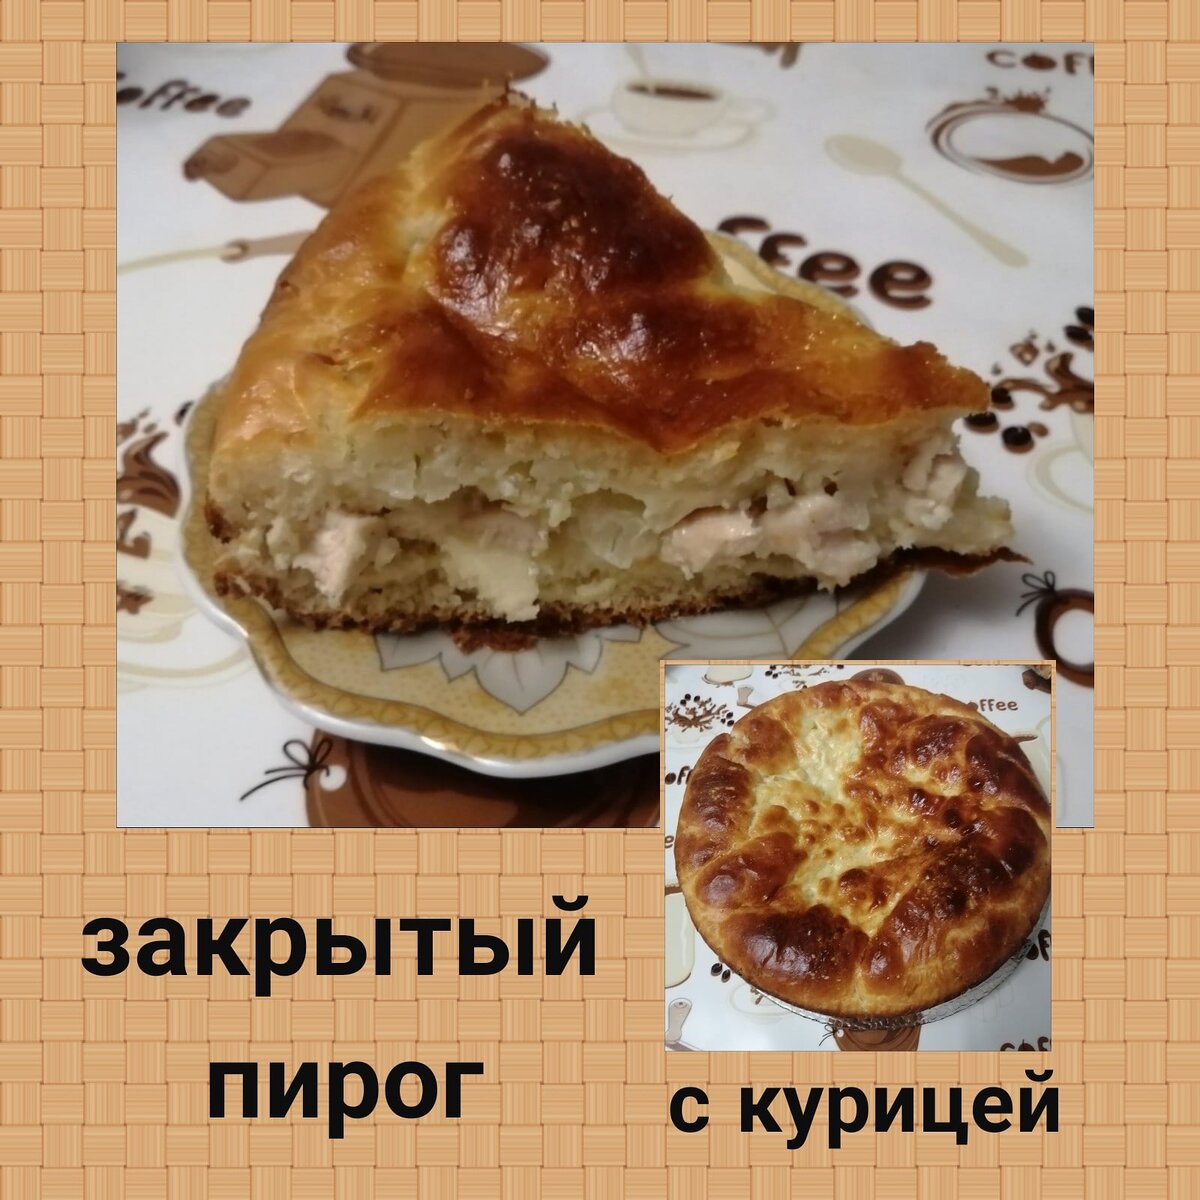 Пирог с курицей (99 рецептов с фото) - рецепты с фотографиями на Поварёапекс124.рф